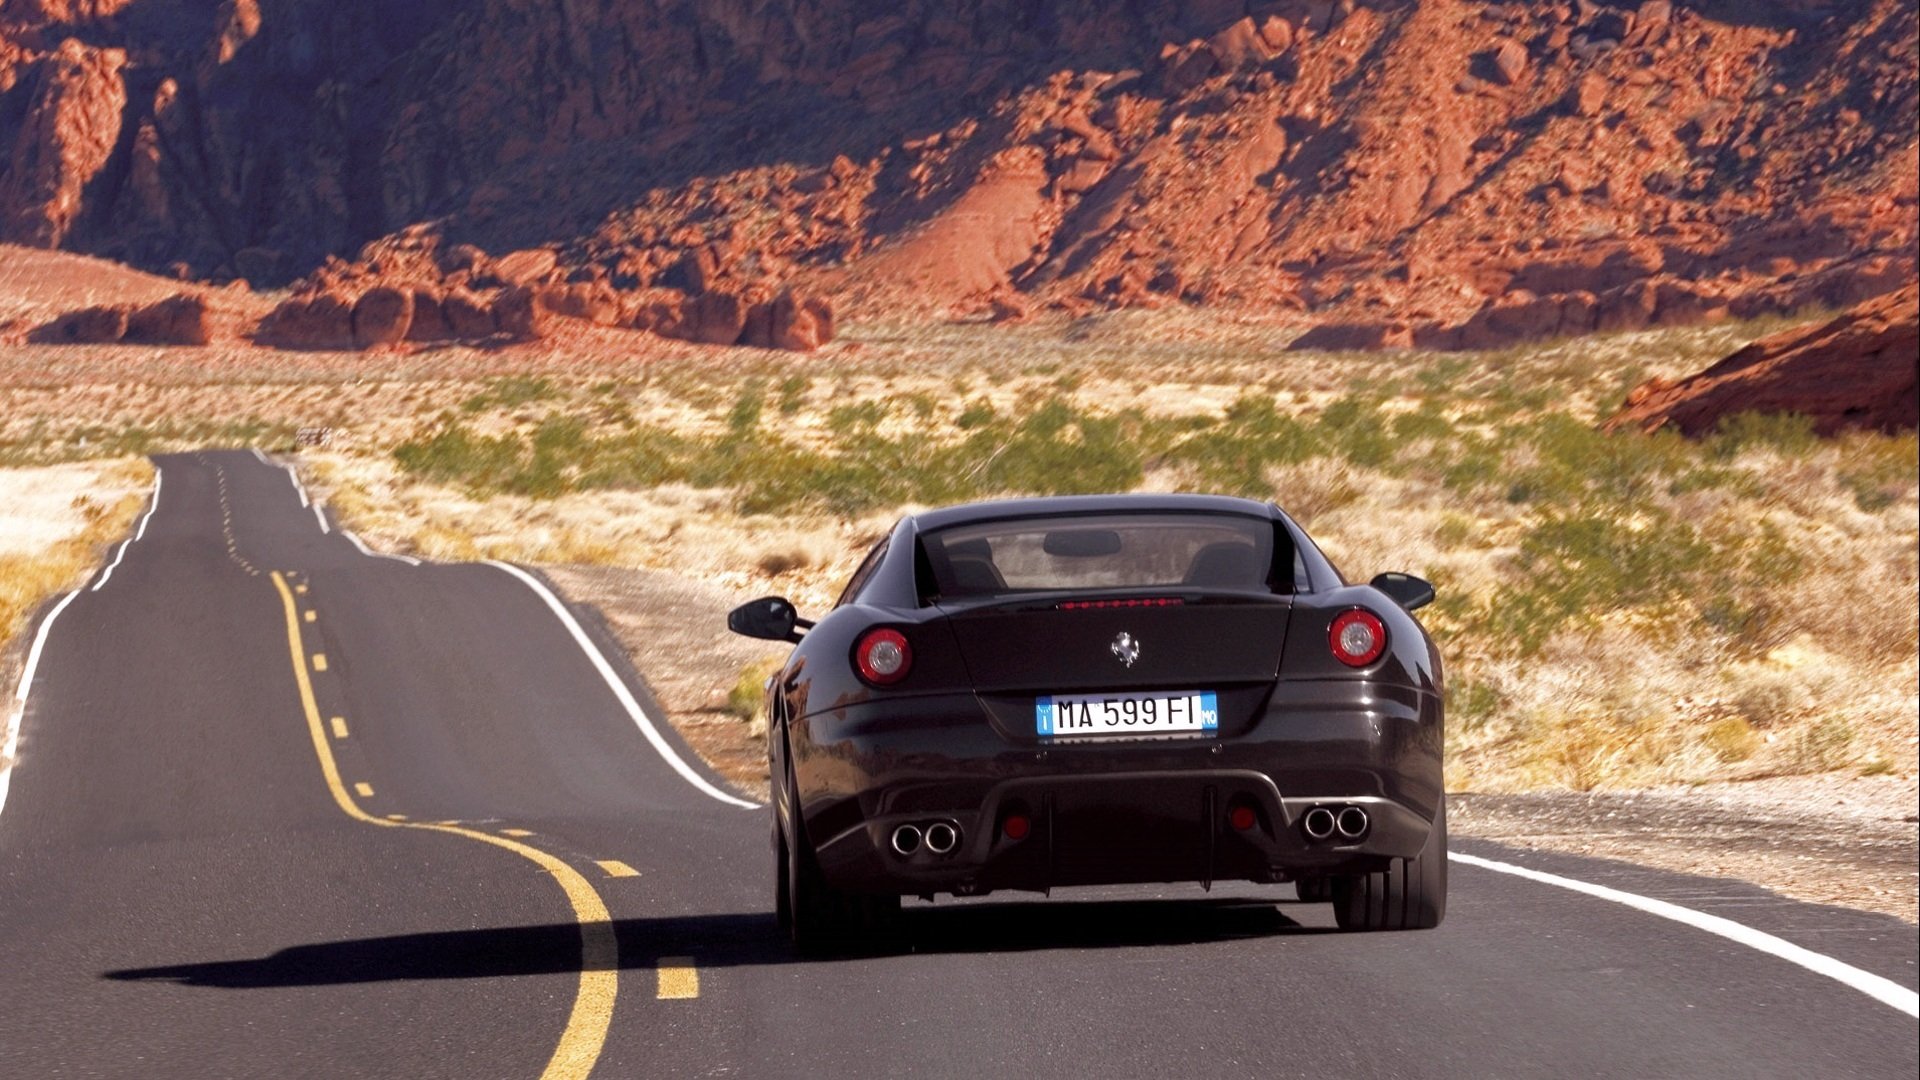 Ferrari 599 Drift. Машина на дороге. Машина едет по дороге. Красивая машина на дороге. Покажи машину которая едет